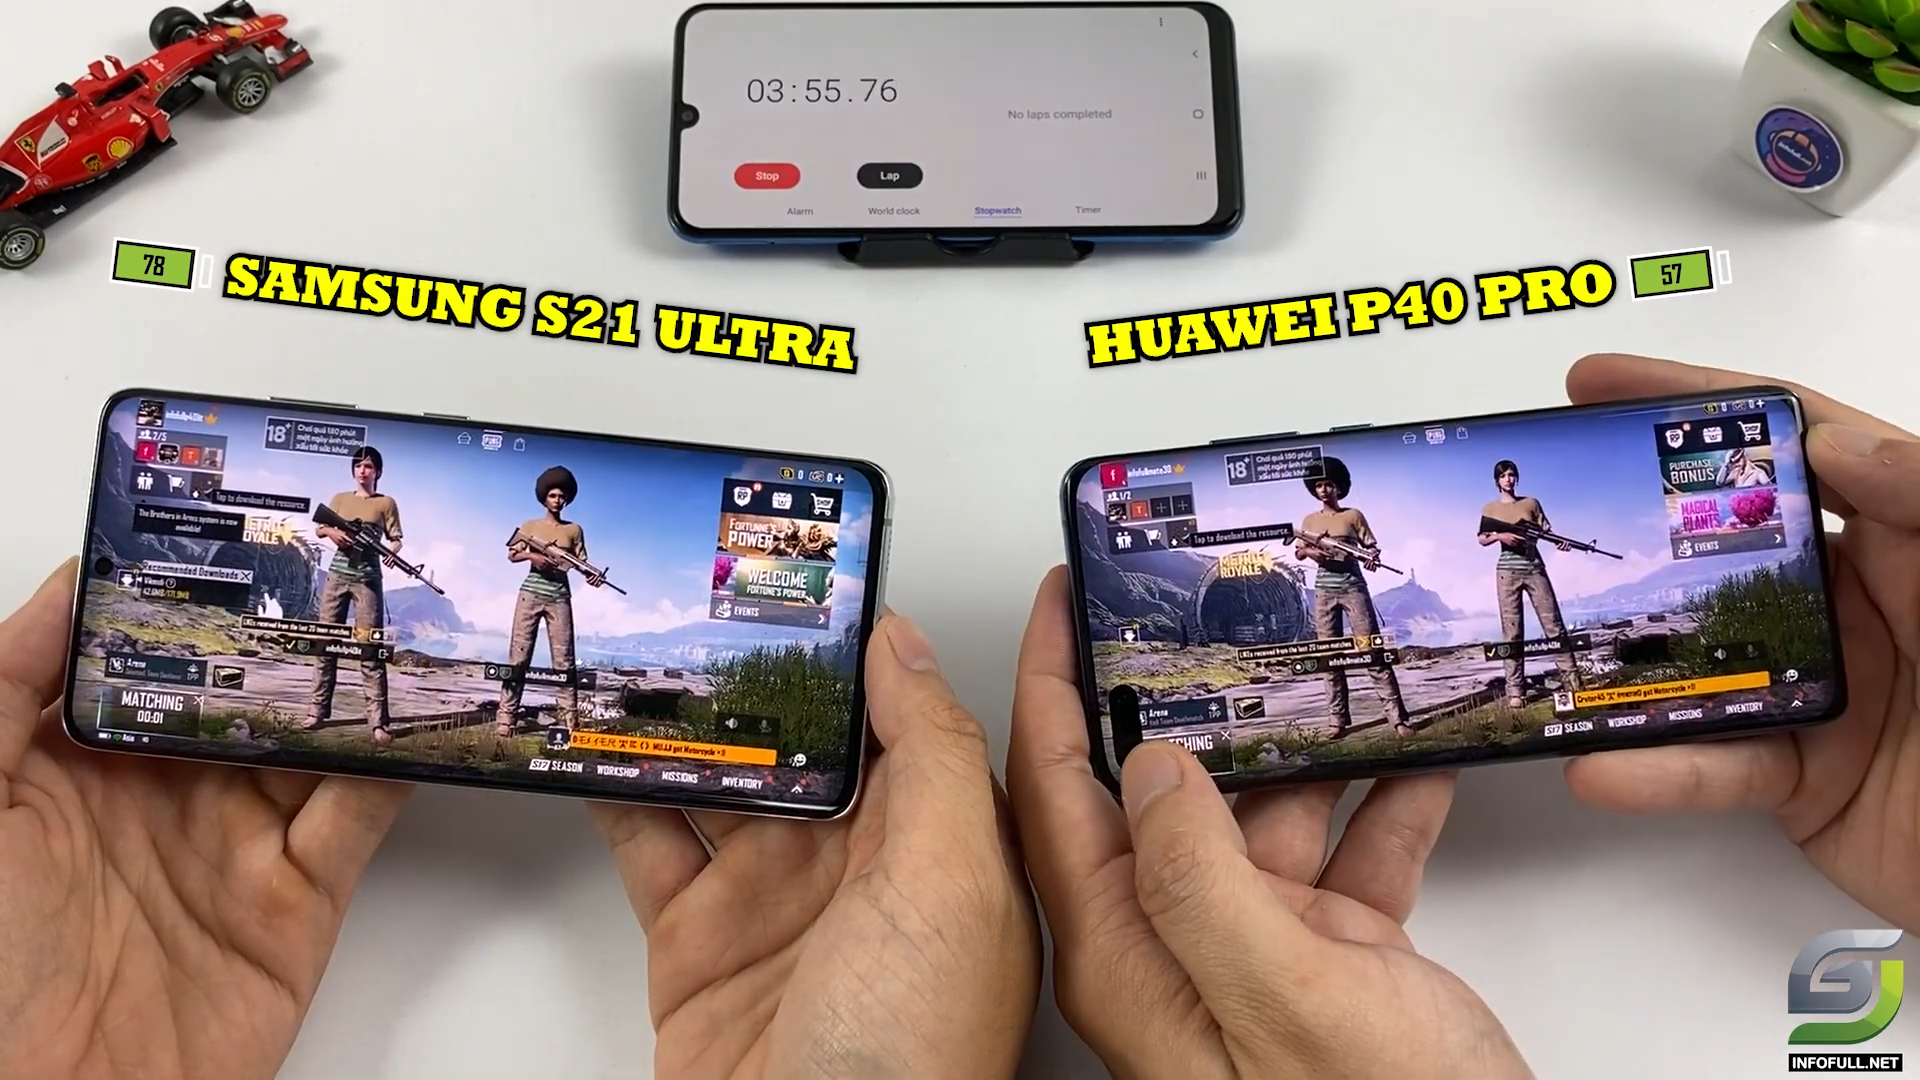 Samsung galaxy s ultra vs huawei p pro pubg mobile comparison